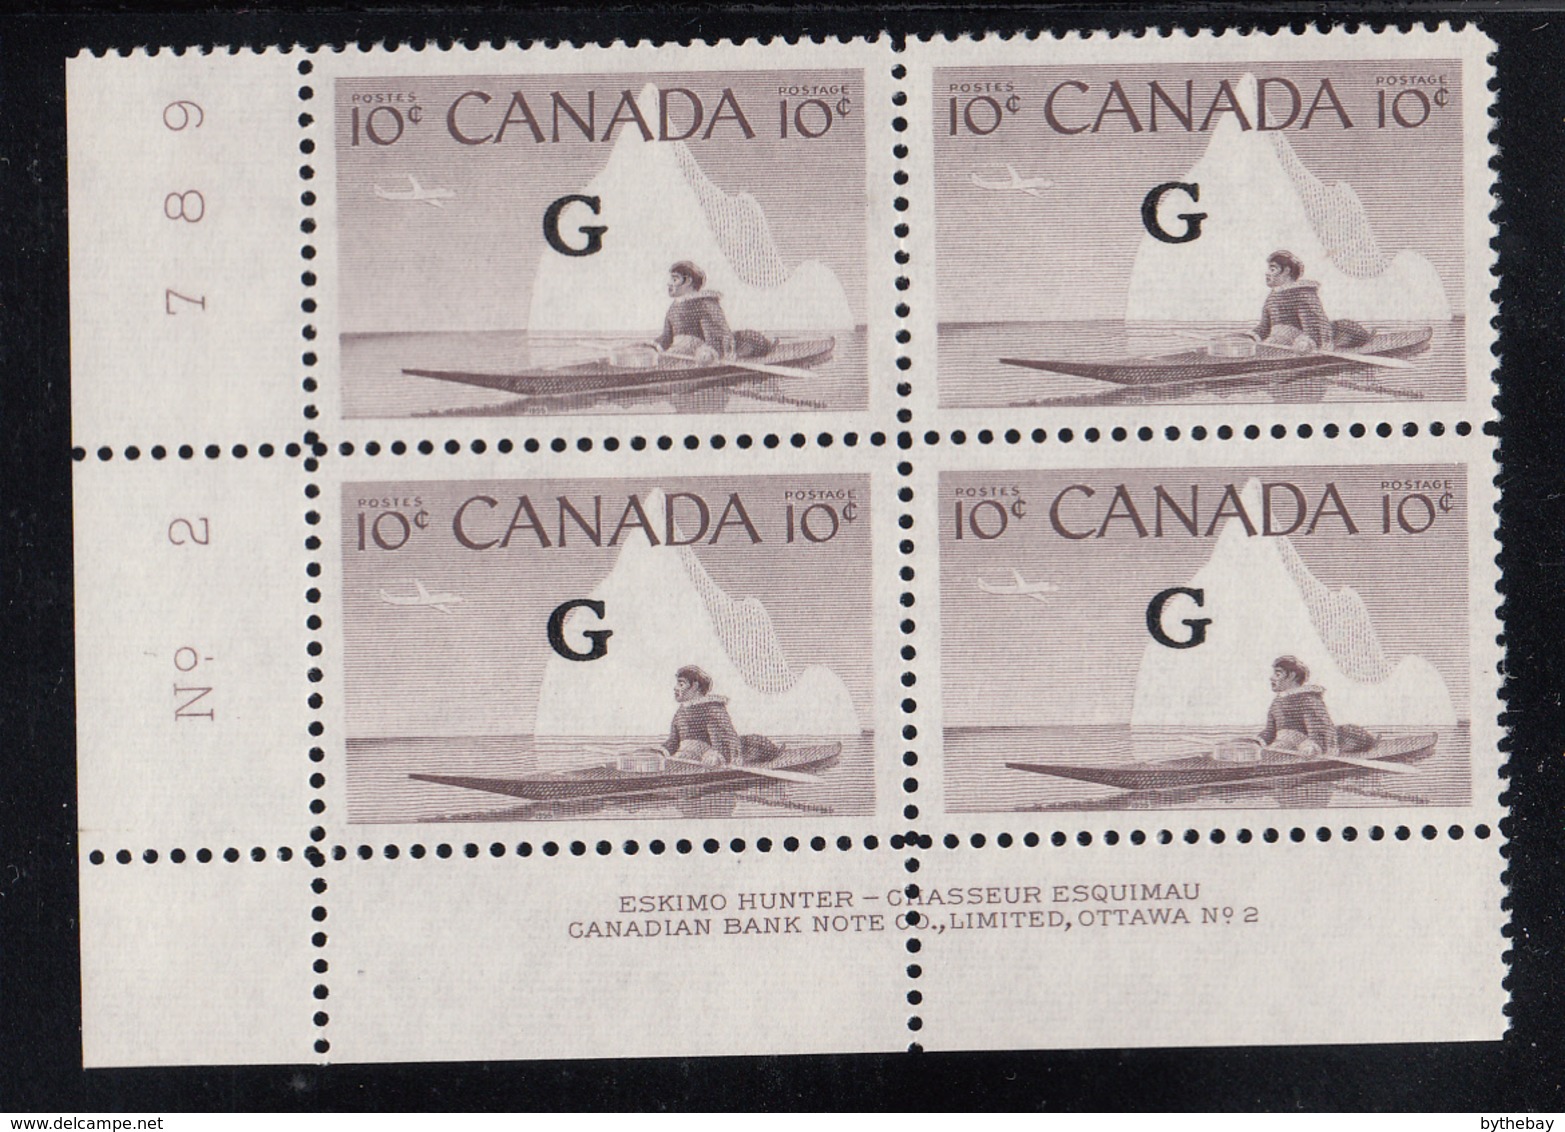 Canada MNH Scott #O39 'G' Overprint On 10c Inuk, Kayak Plate #2 Lower Left PB - Aufdrucksausgaben